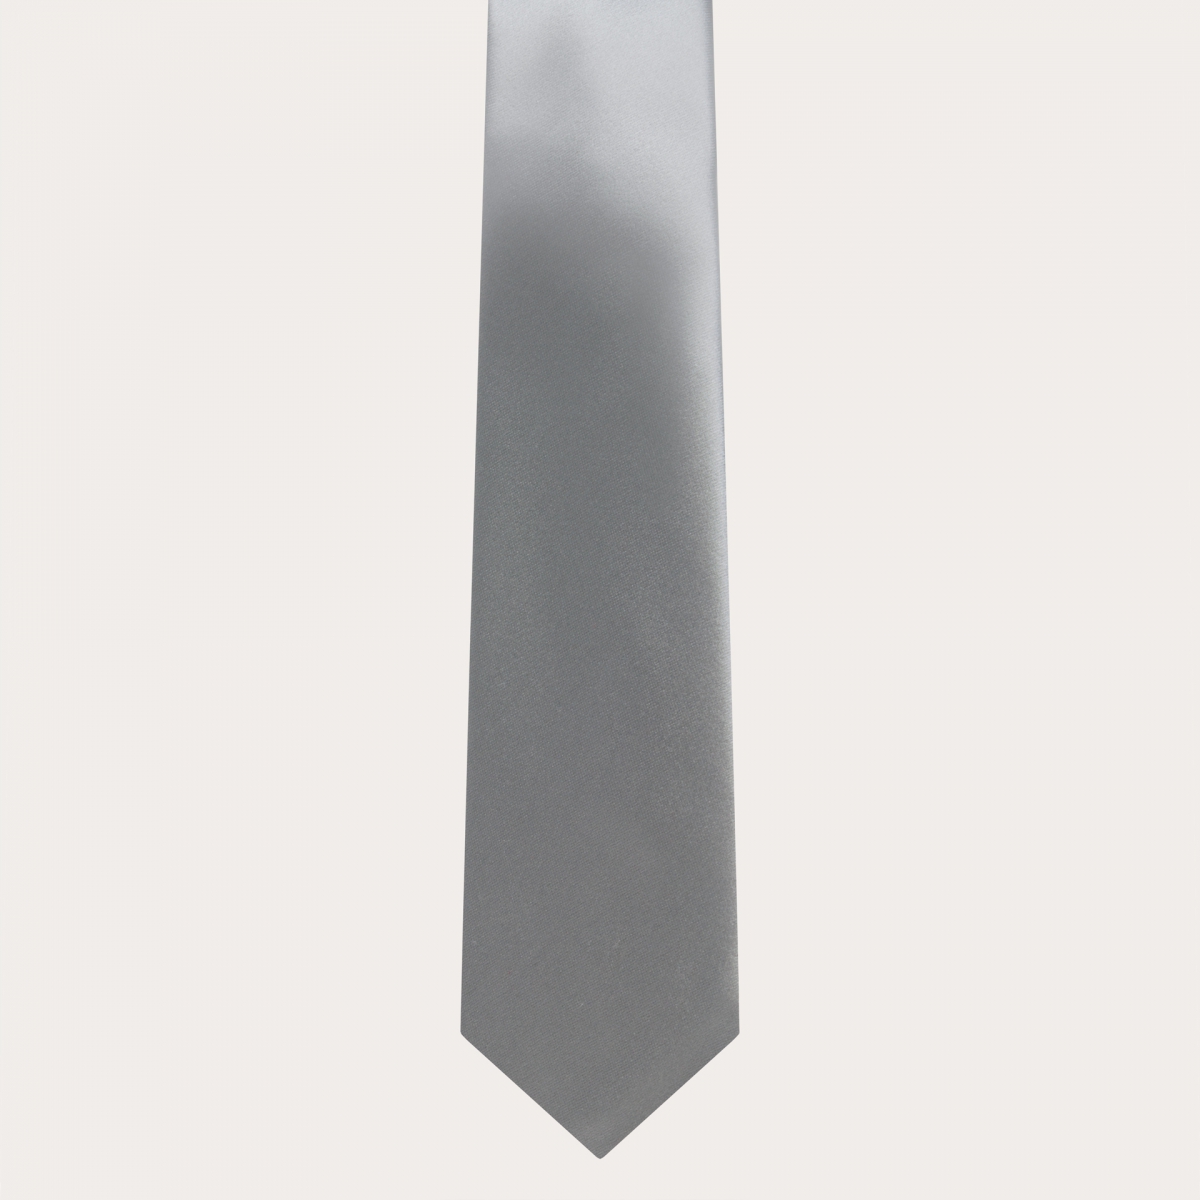 BRUCLE Cravate classique en satin de soie, gris